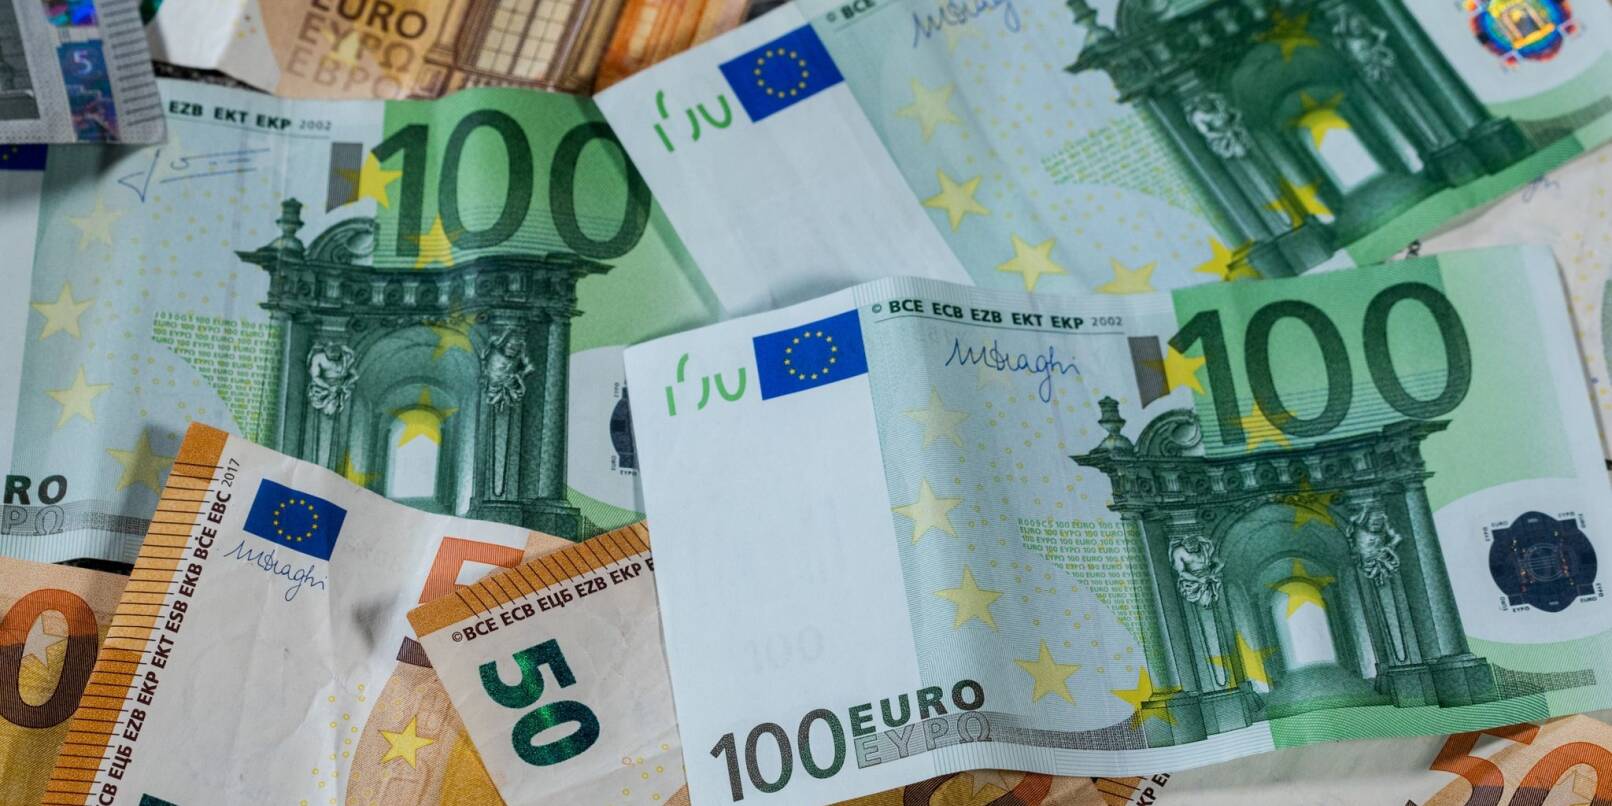 Euro-Geldscheine mit unterschiedlichen Werten liegen aufeinander.